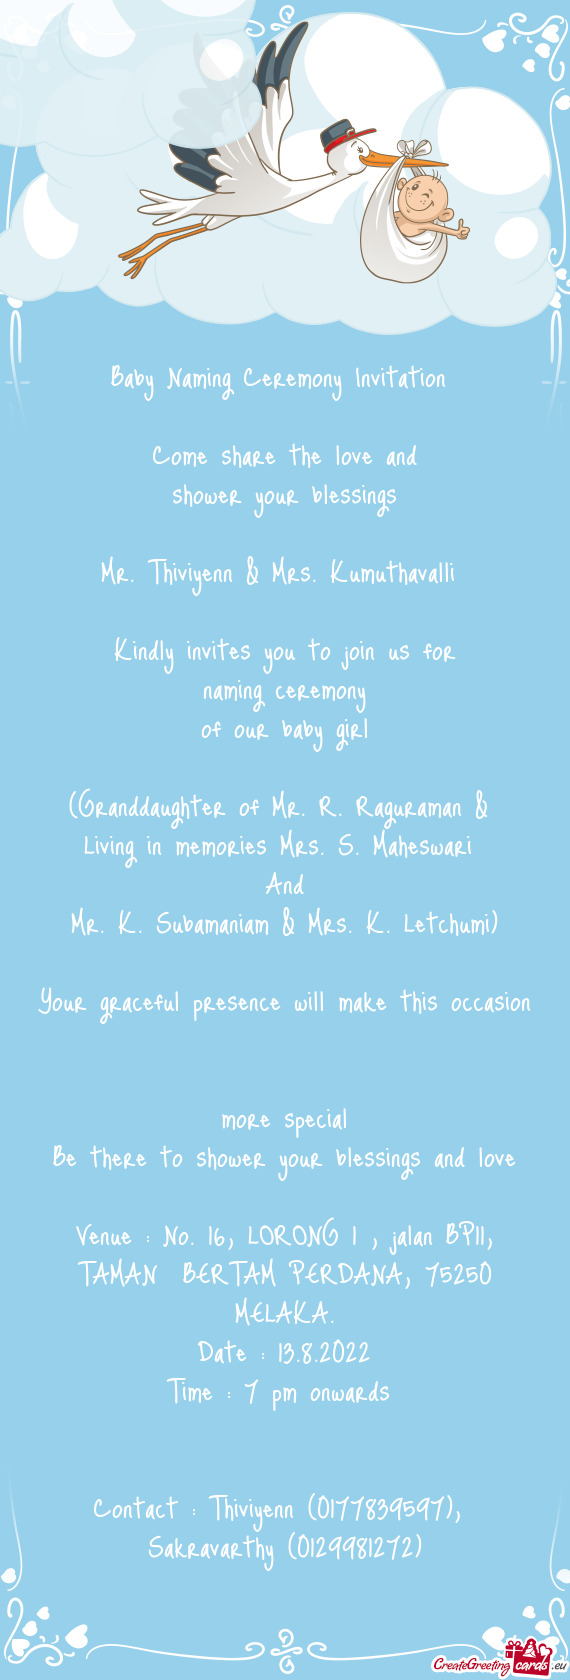 Mr. Thiviyenn & Mrs. Kumuthavalli